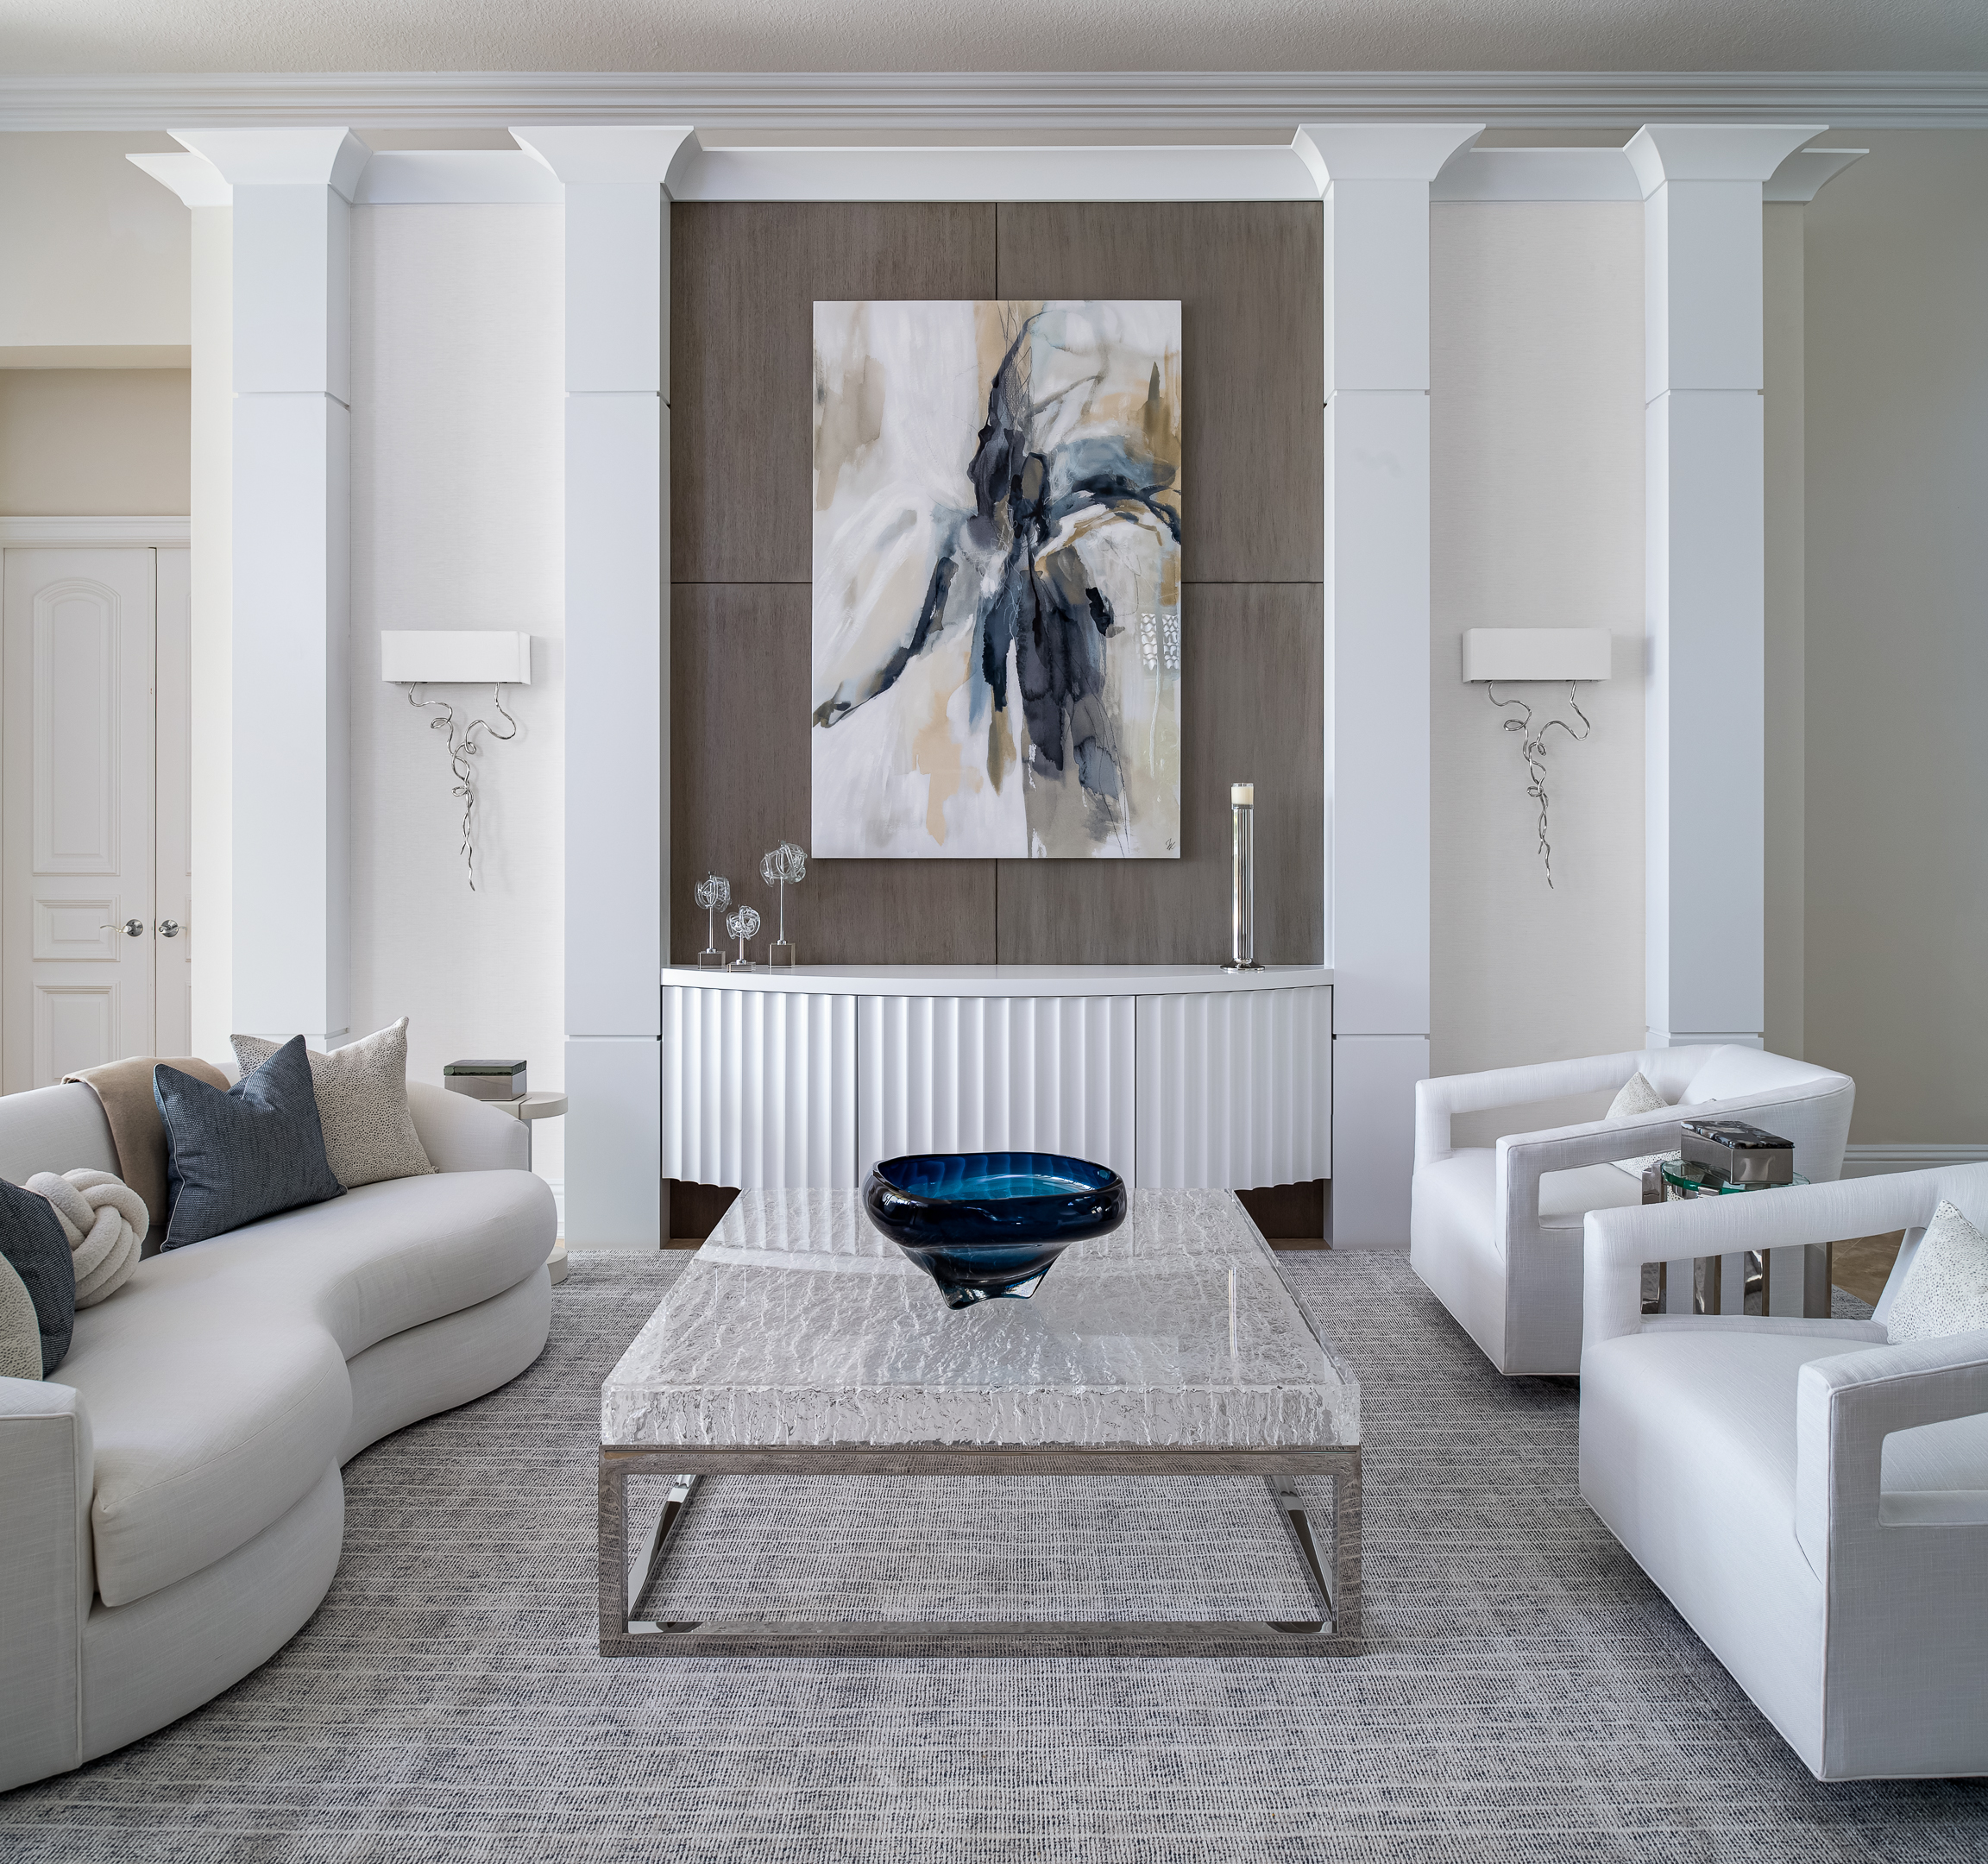 Interior design photographer captures a living room with contemporary art